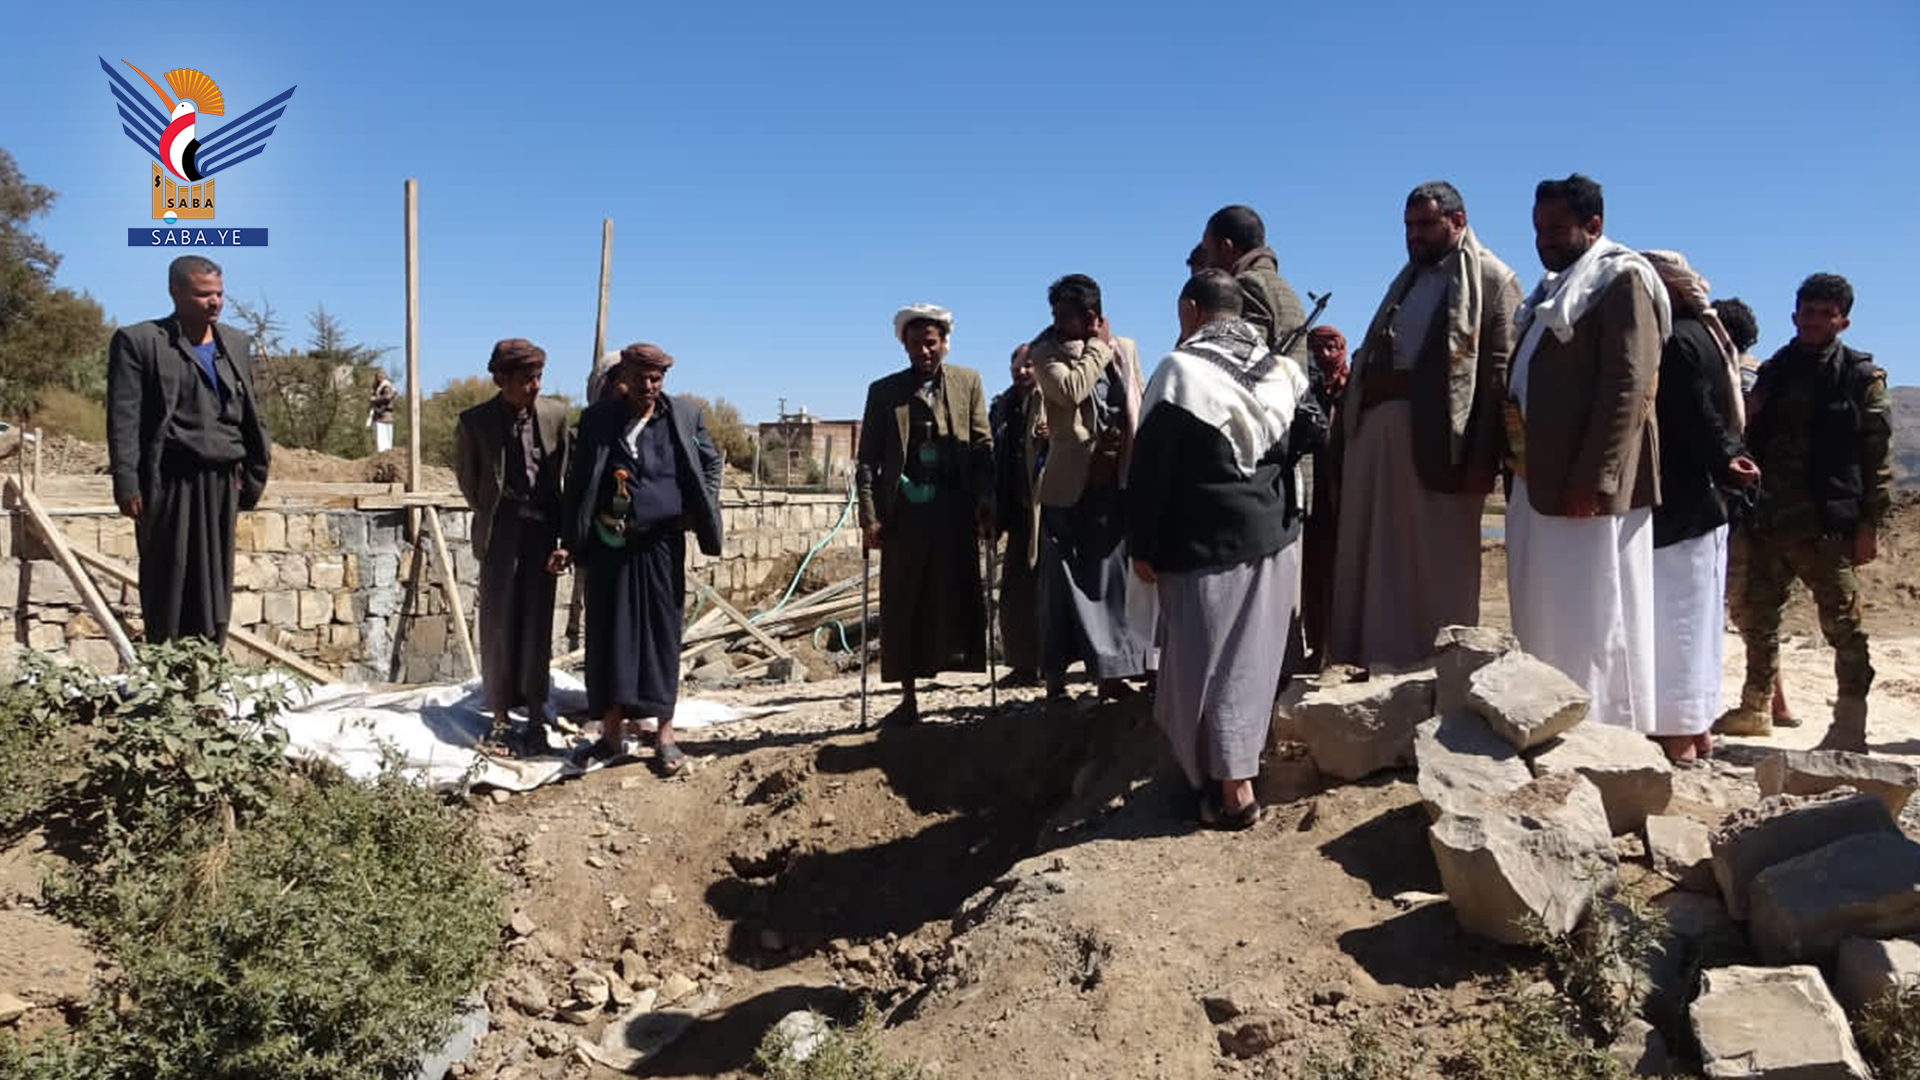 Les besoins des habitants du district de à Rejam, Sanaa, inspectés et plantation de 700 plants de café à Taiz inaugurée